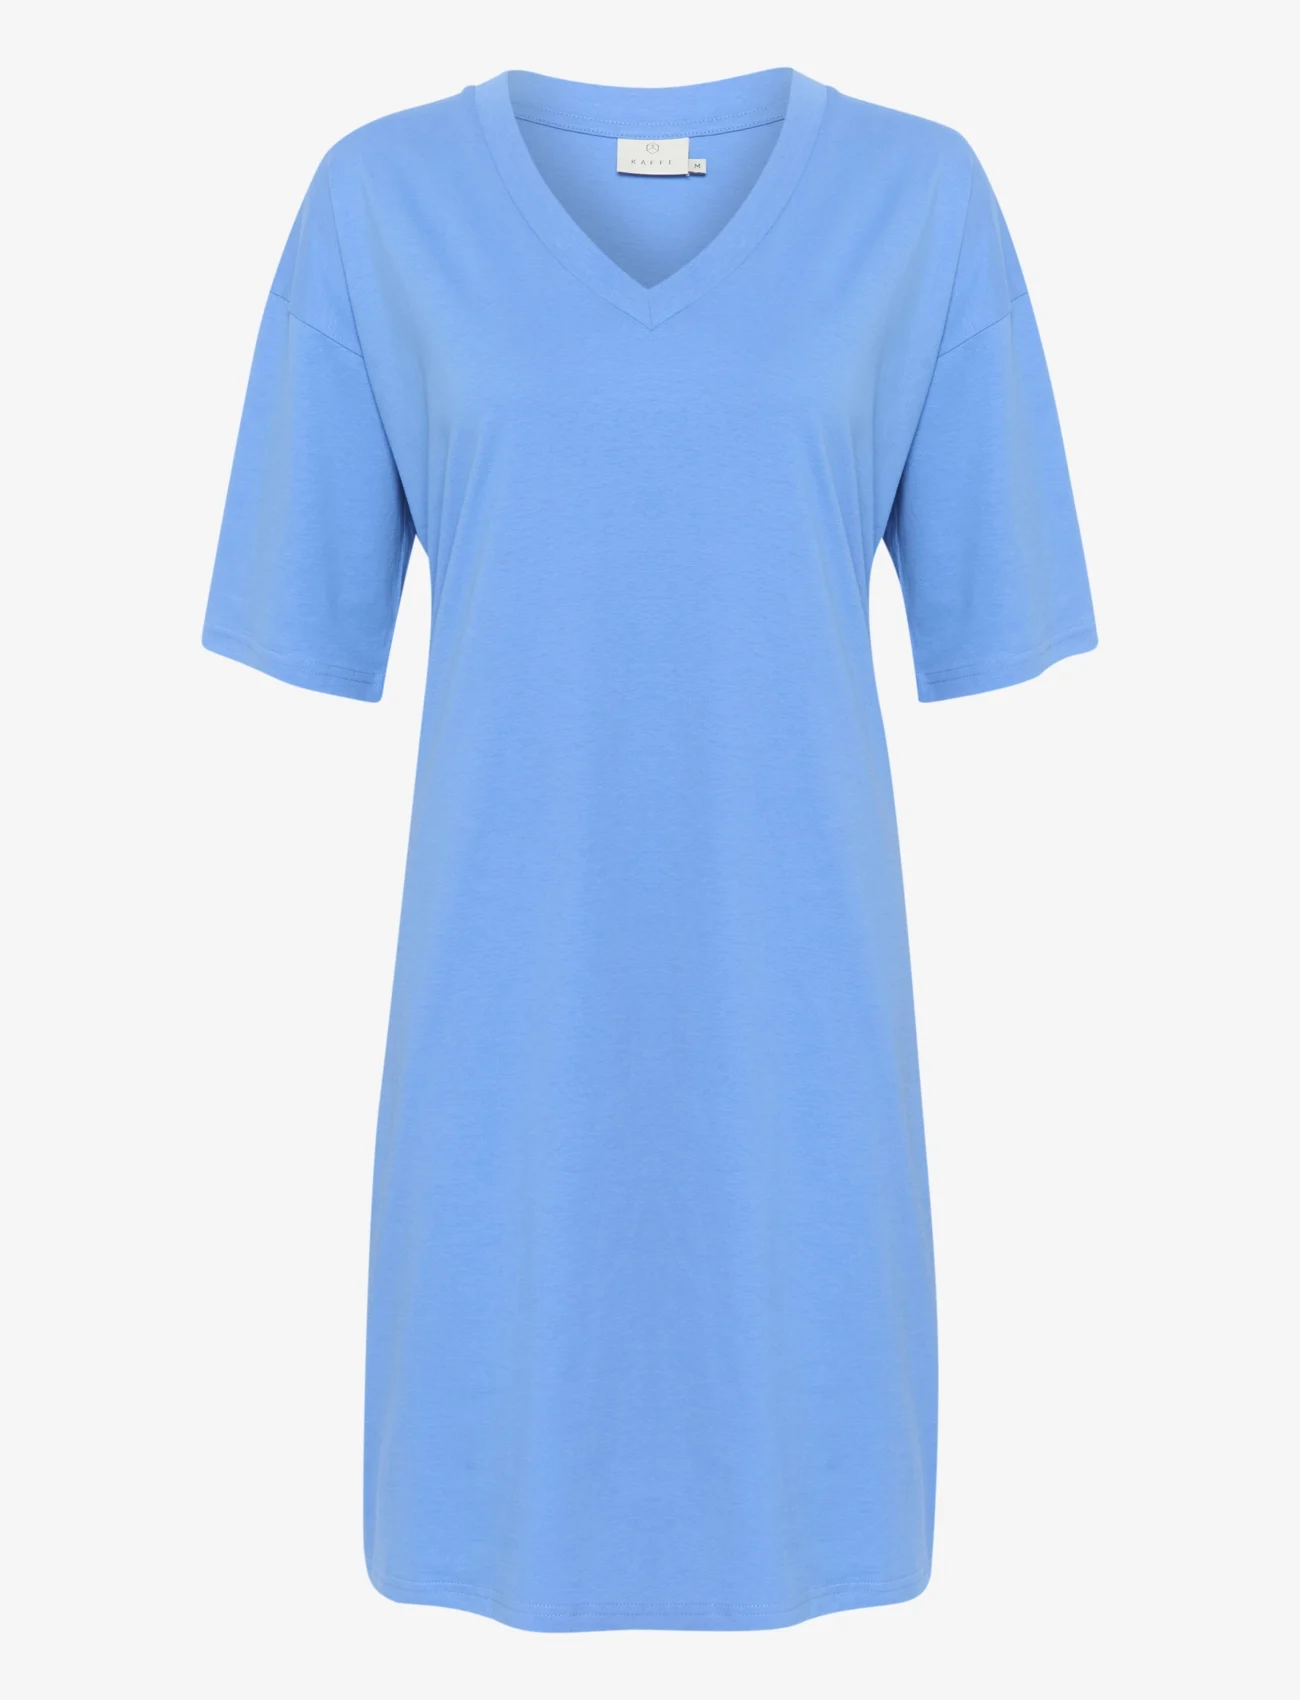 Kaffe - KAedna Short Dress - t-shirt dresses - ultramarine - 0